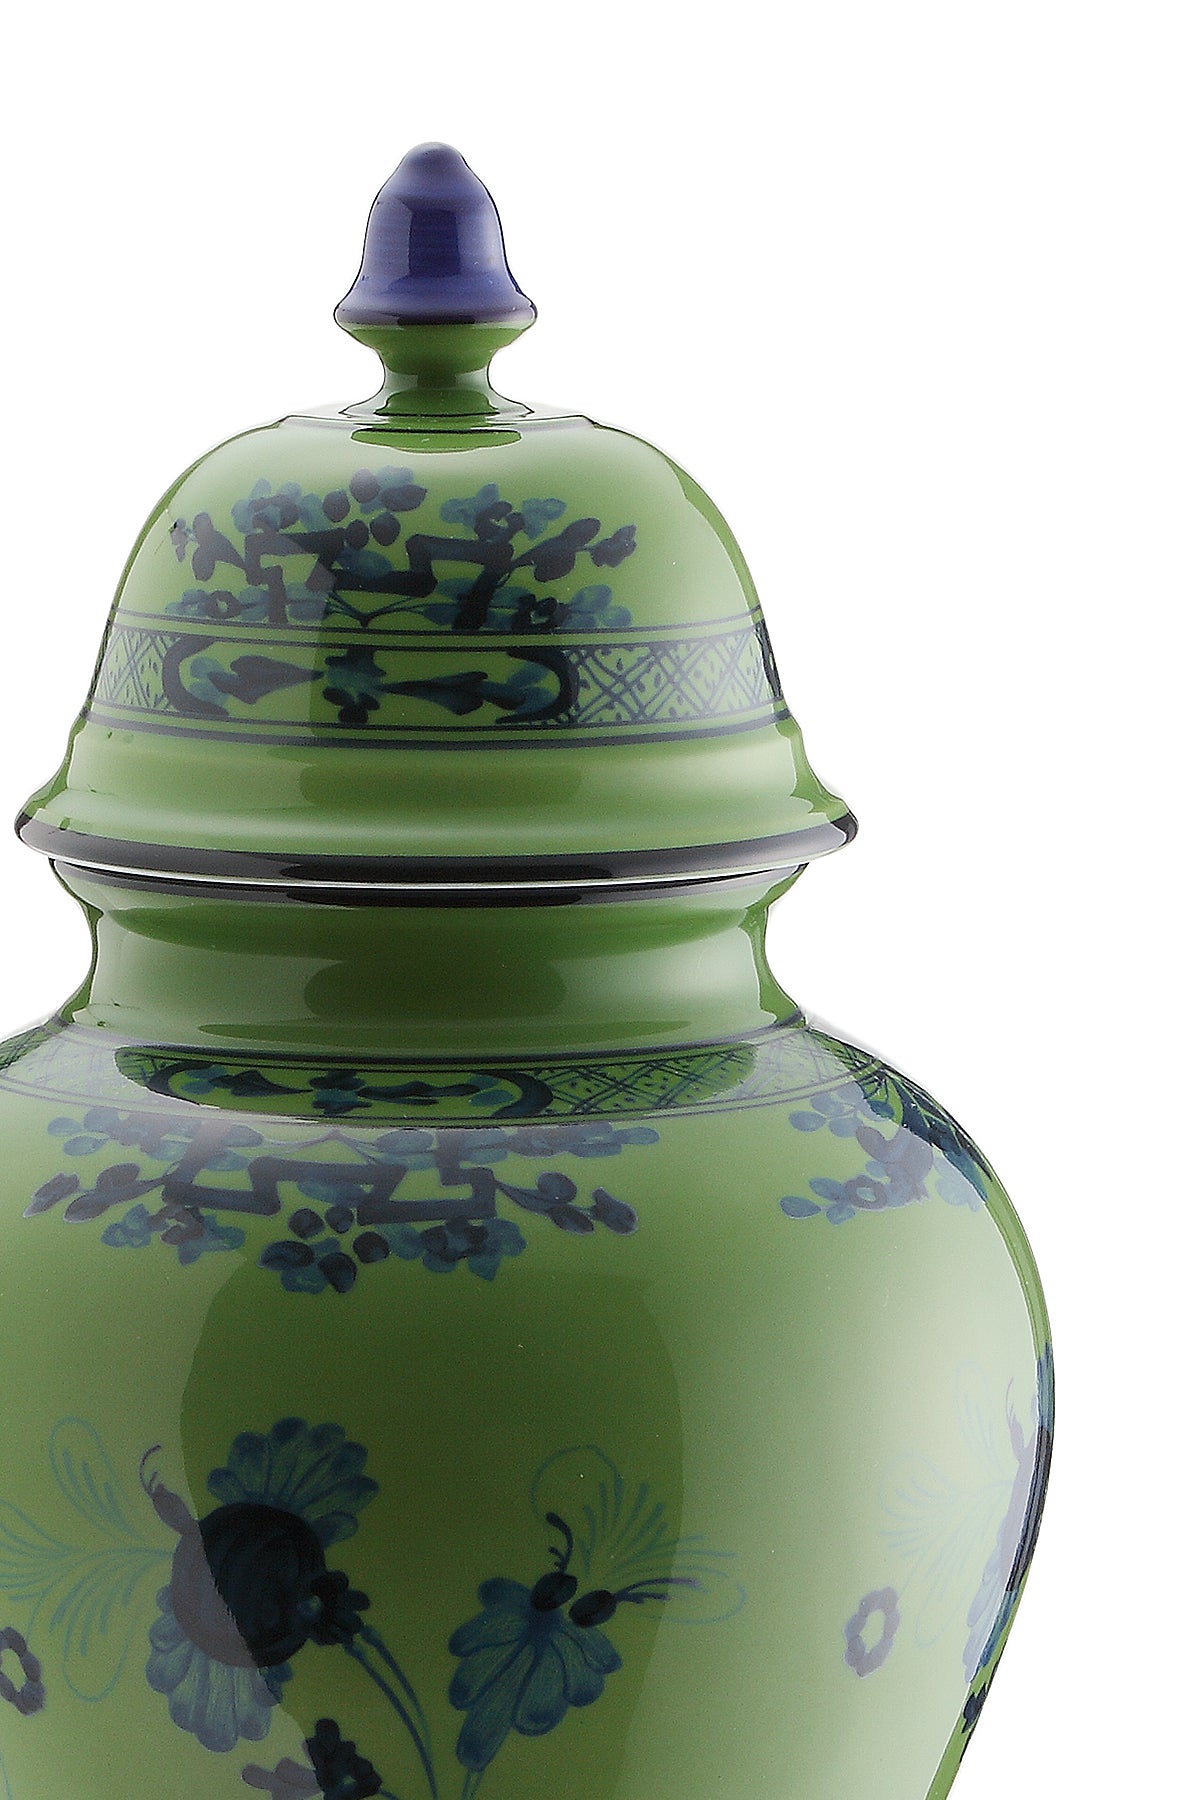 GINORI 1735 Ginori 1735 potiche vase with cover oriente italiano h 31 cm